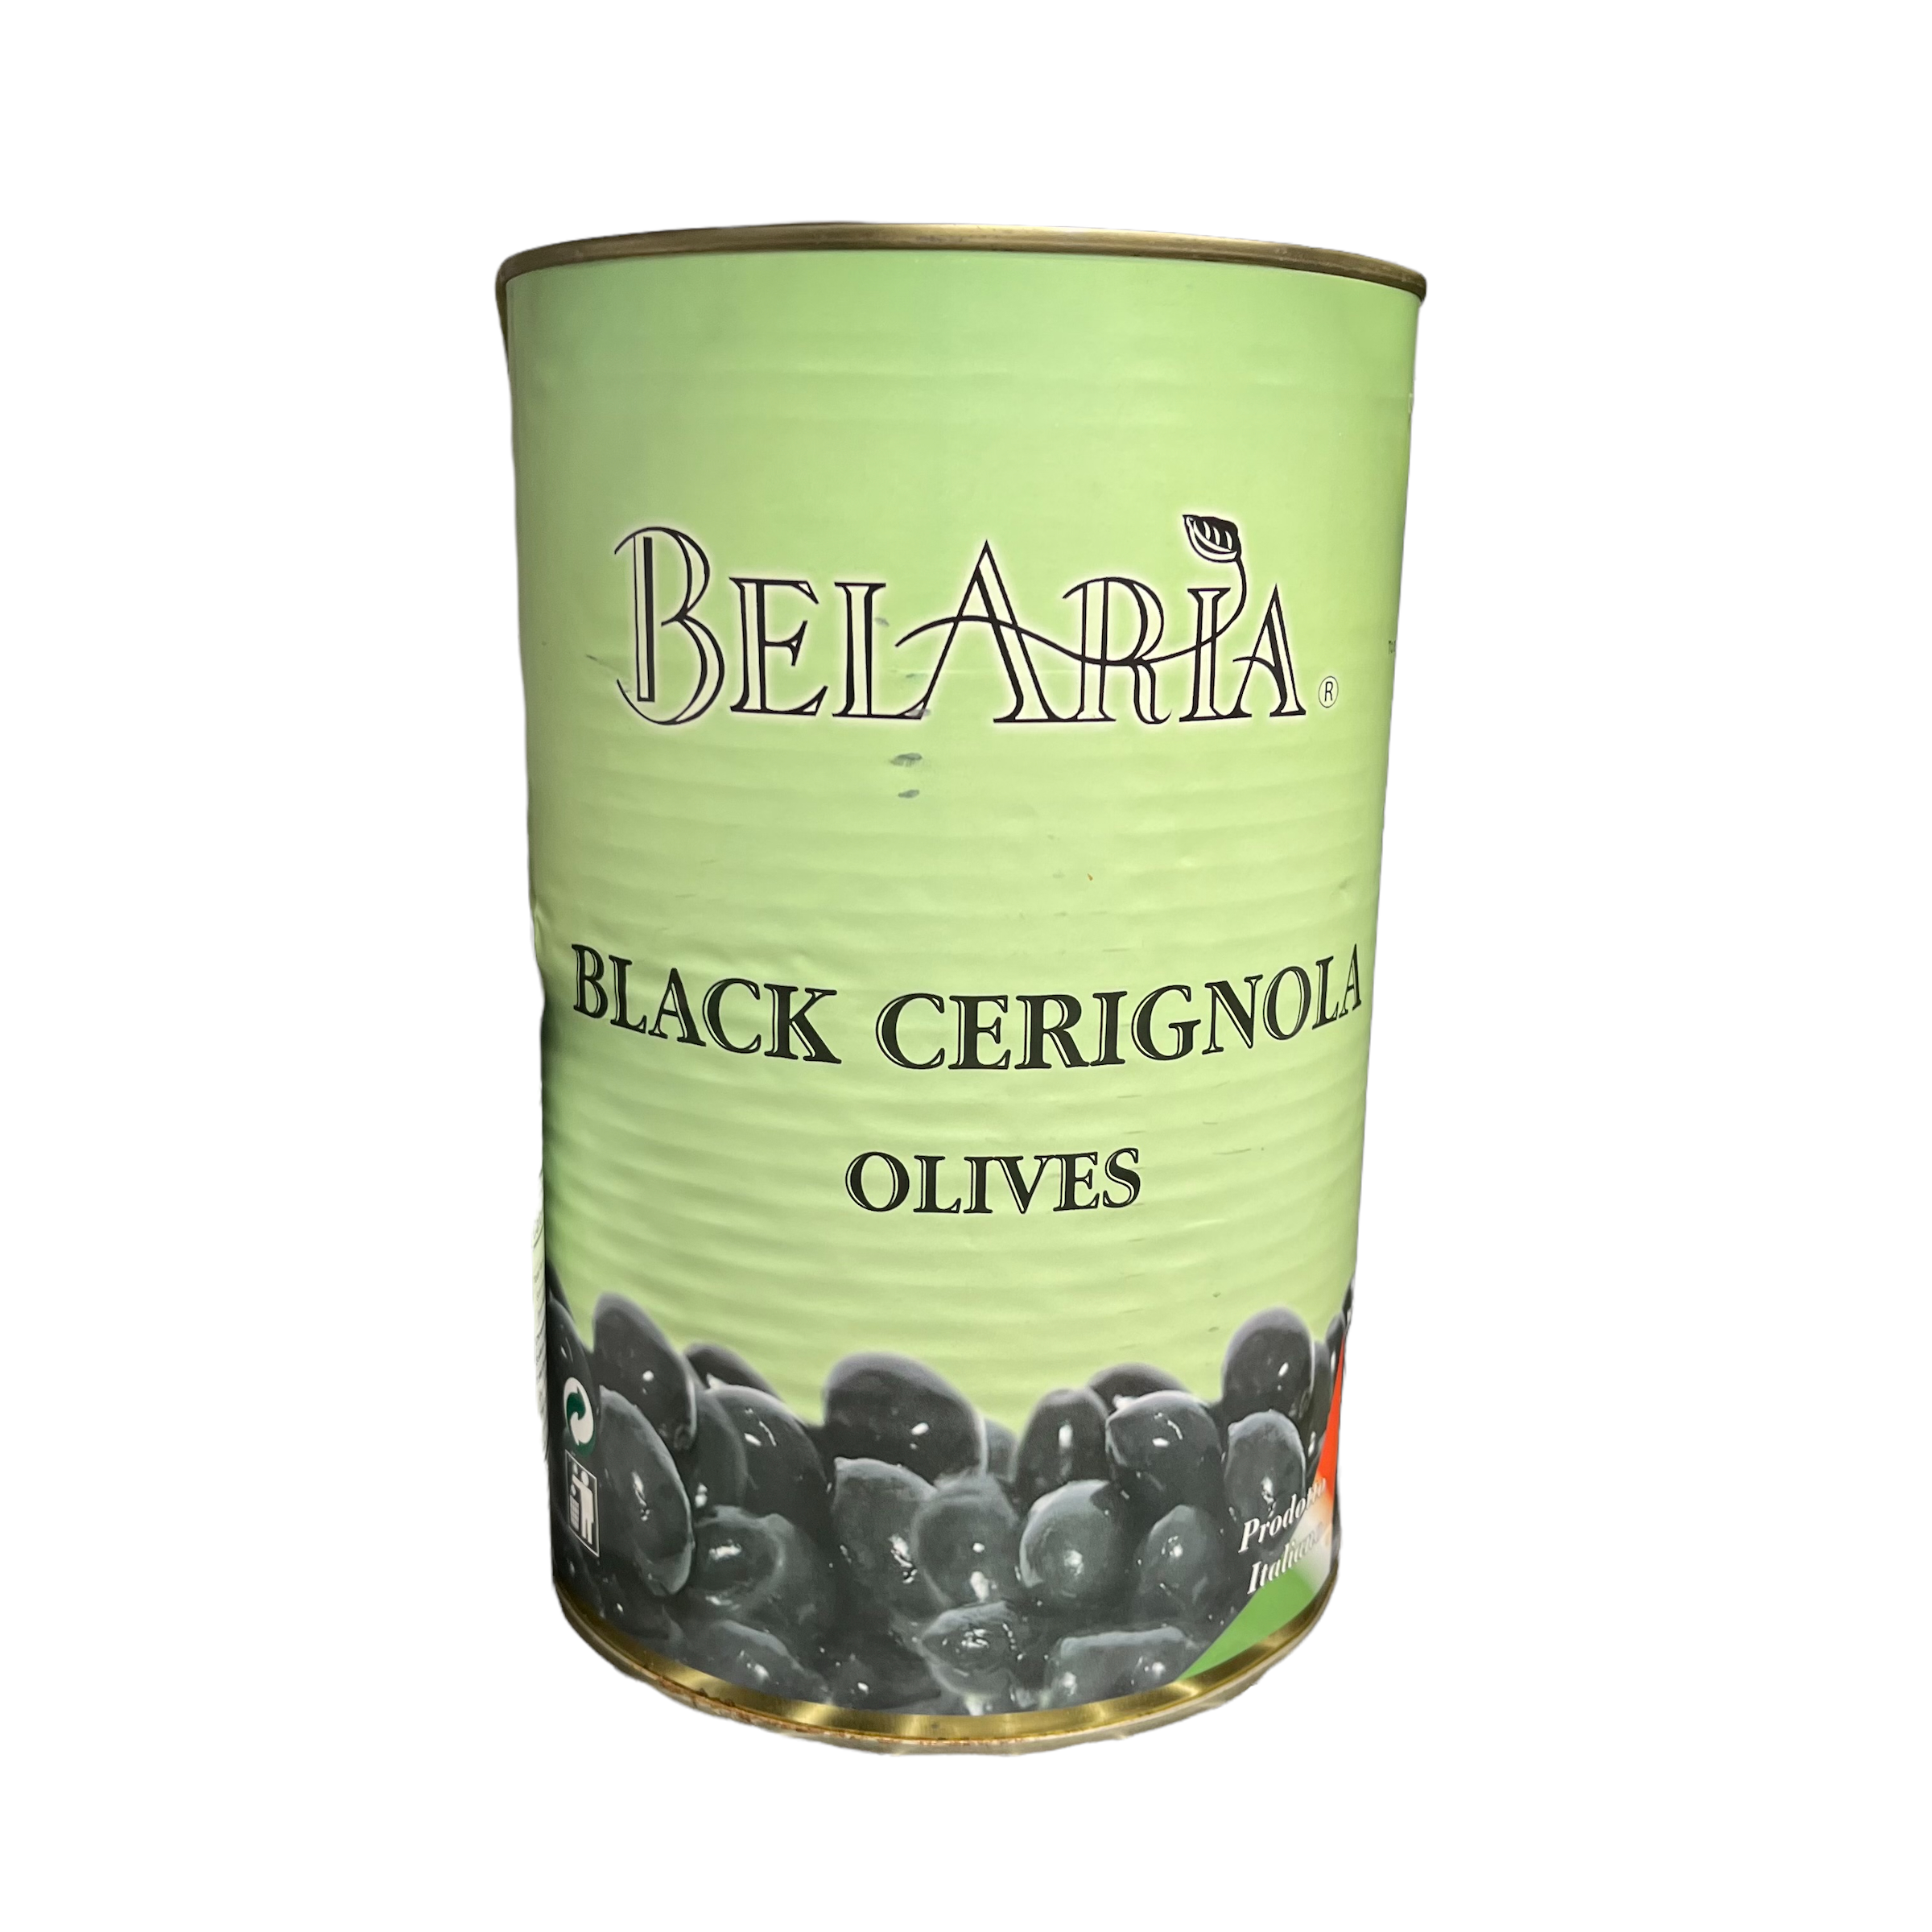 BelAria Black Cerignola Olives 5.5lb